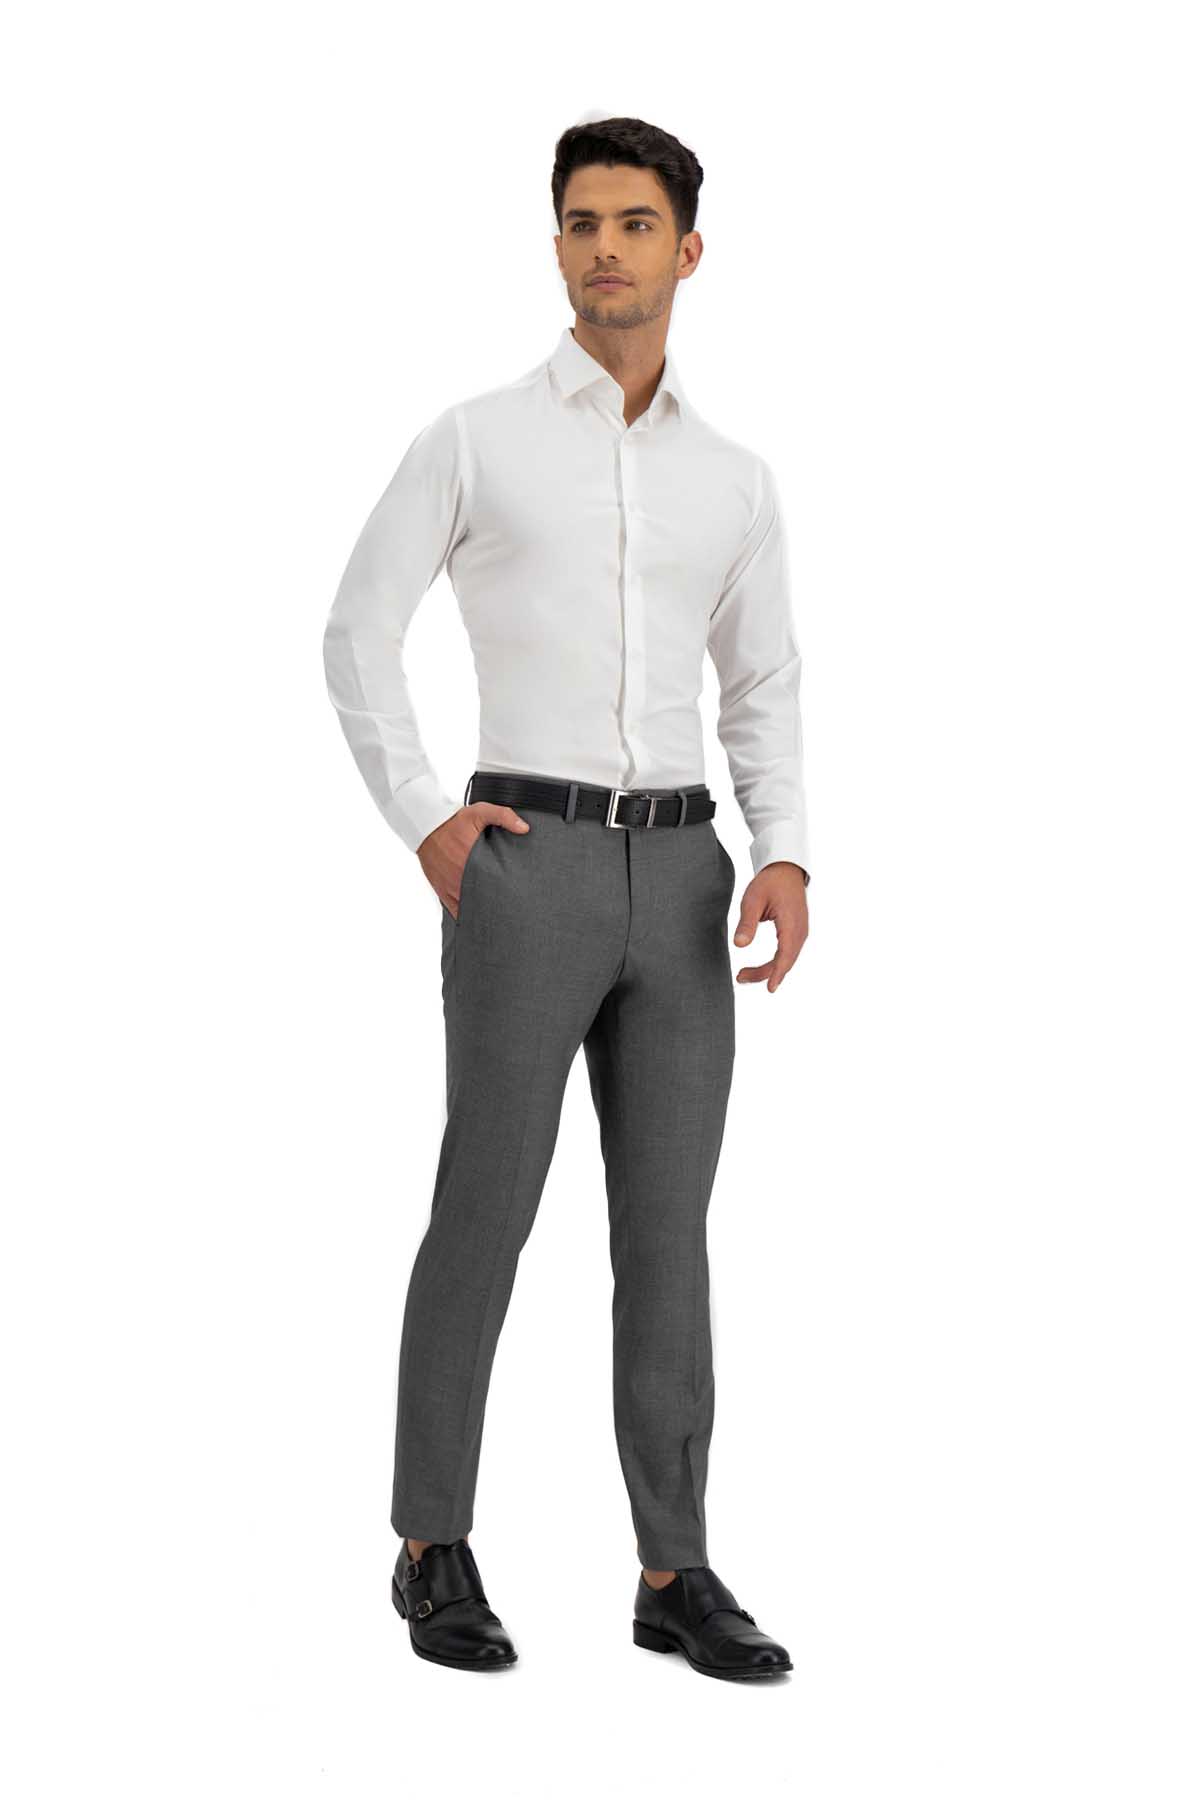 Pantalón vestir gris oscuro - Hombre - OI2019